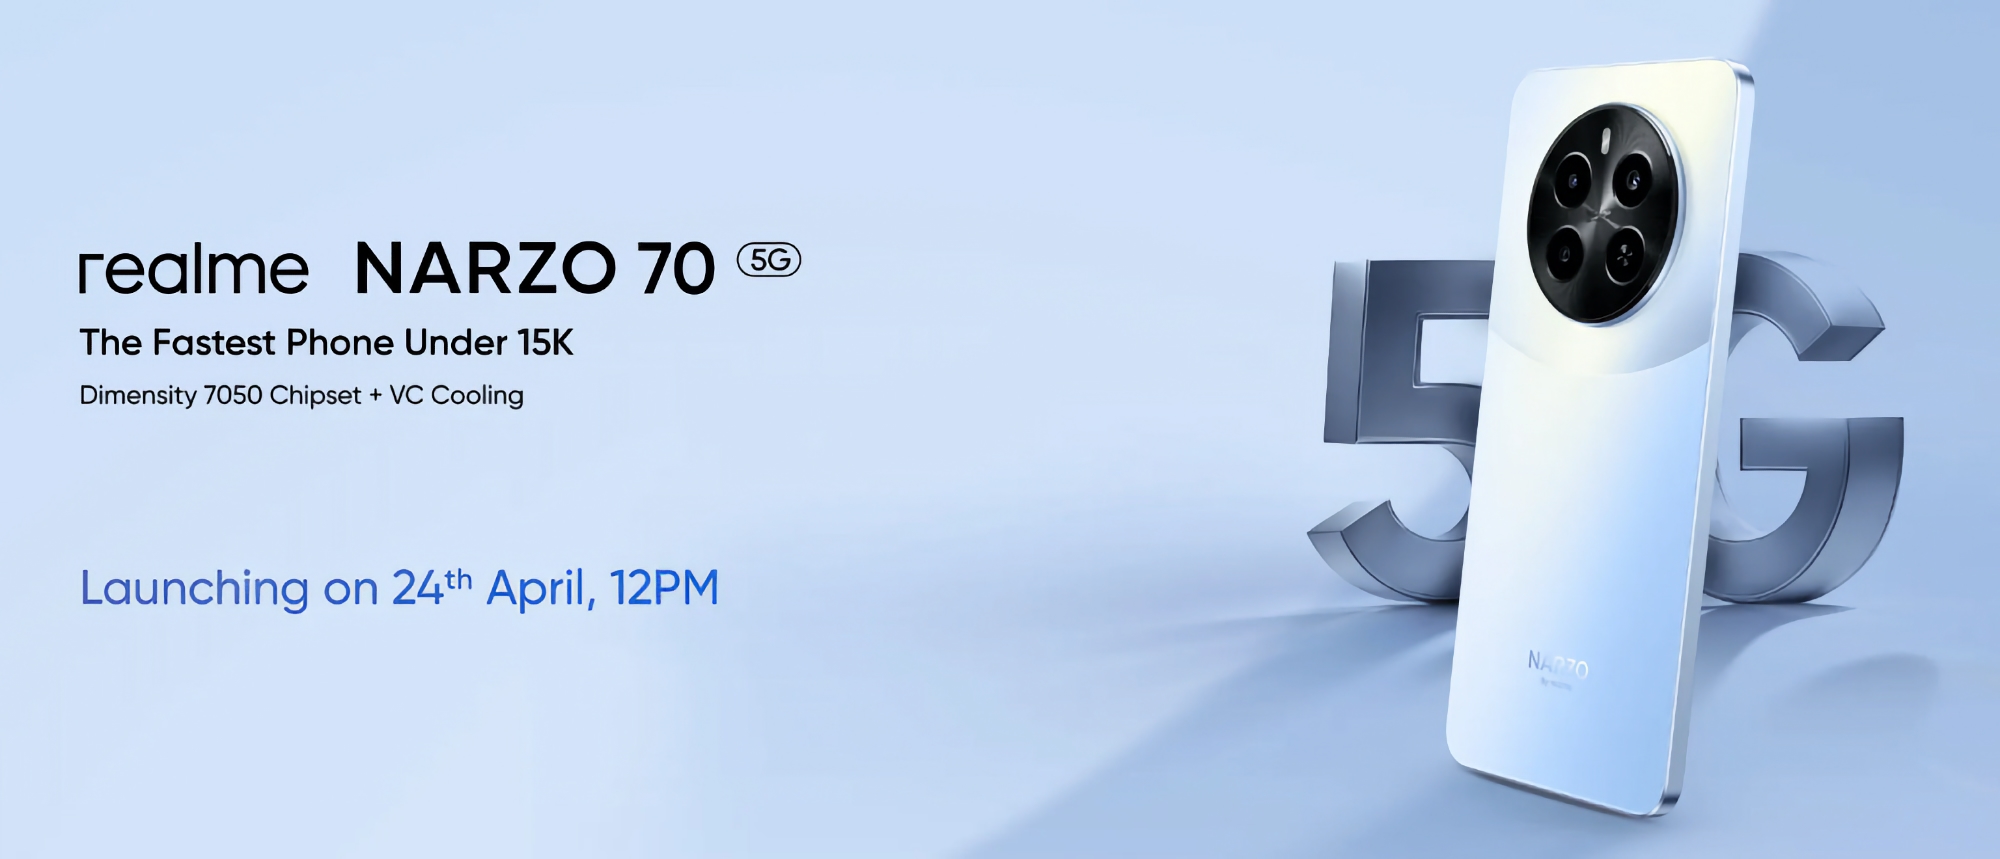 C'est officiel : le Realme Narzo 70 5G avec la puce MediaTek Dimensity 7050 sera lancé le 24 avril.